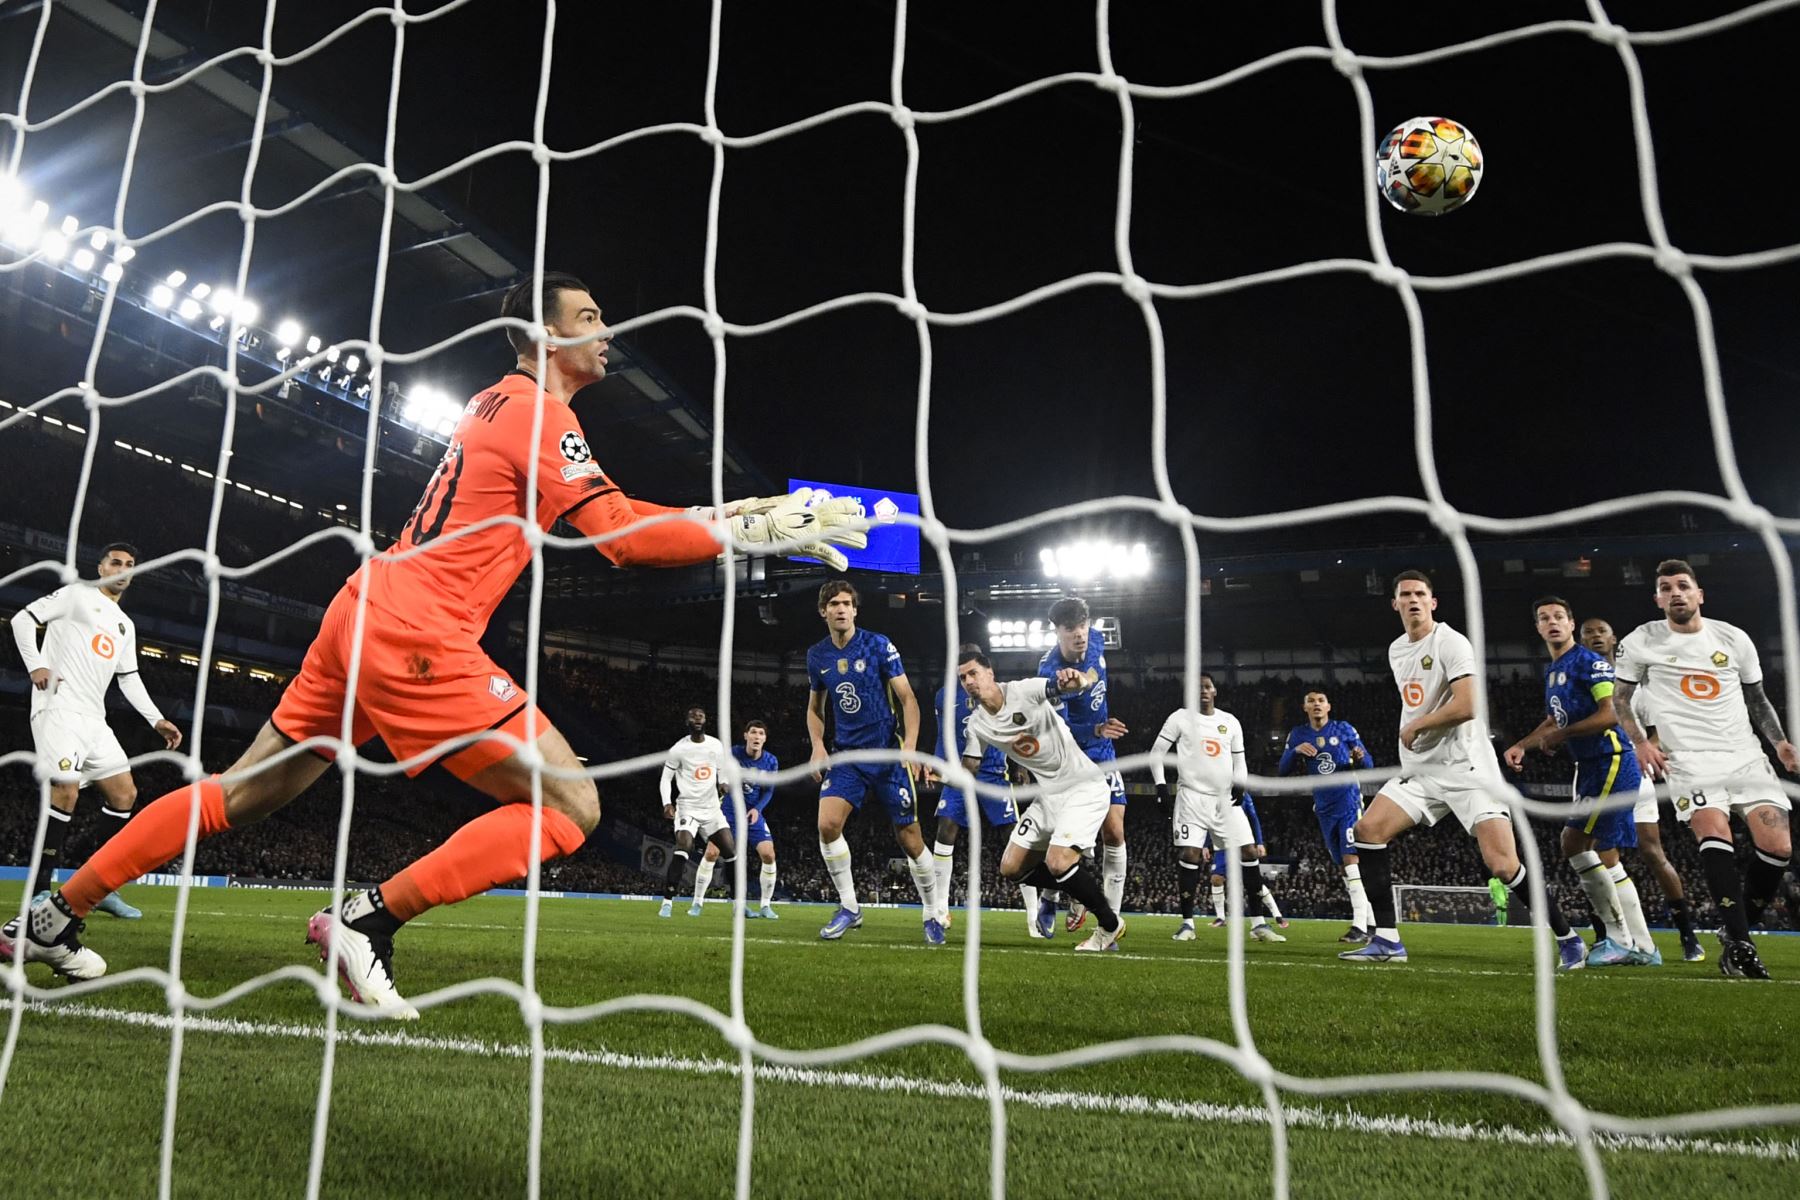 El centrocampista alemán del Chelsea, Kai Havertz, cabecea el balón y marca un gol durante el partido de ida de los octavos de final de la Liga de Campeones de la UEFA entre el Chelsea y el Lille.
Foto: AFP